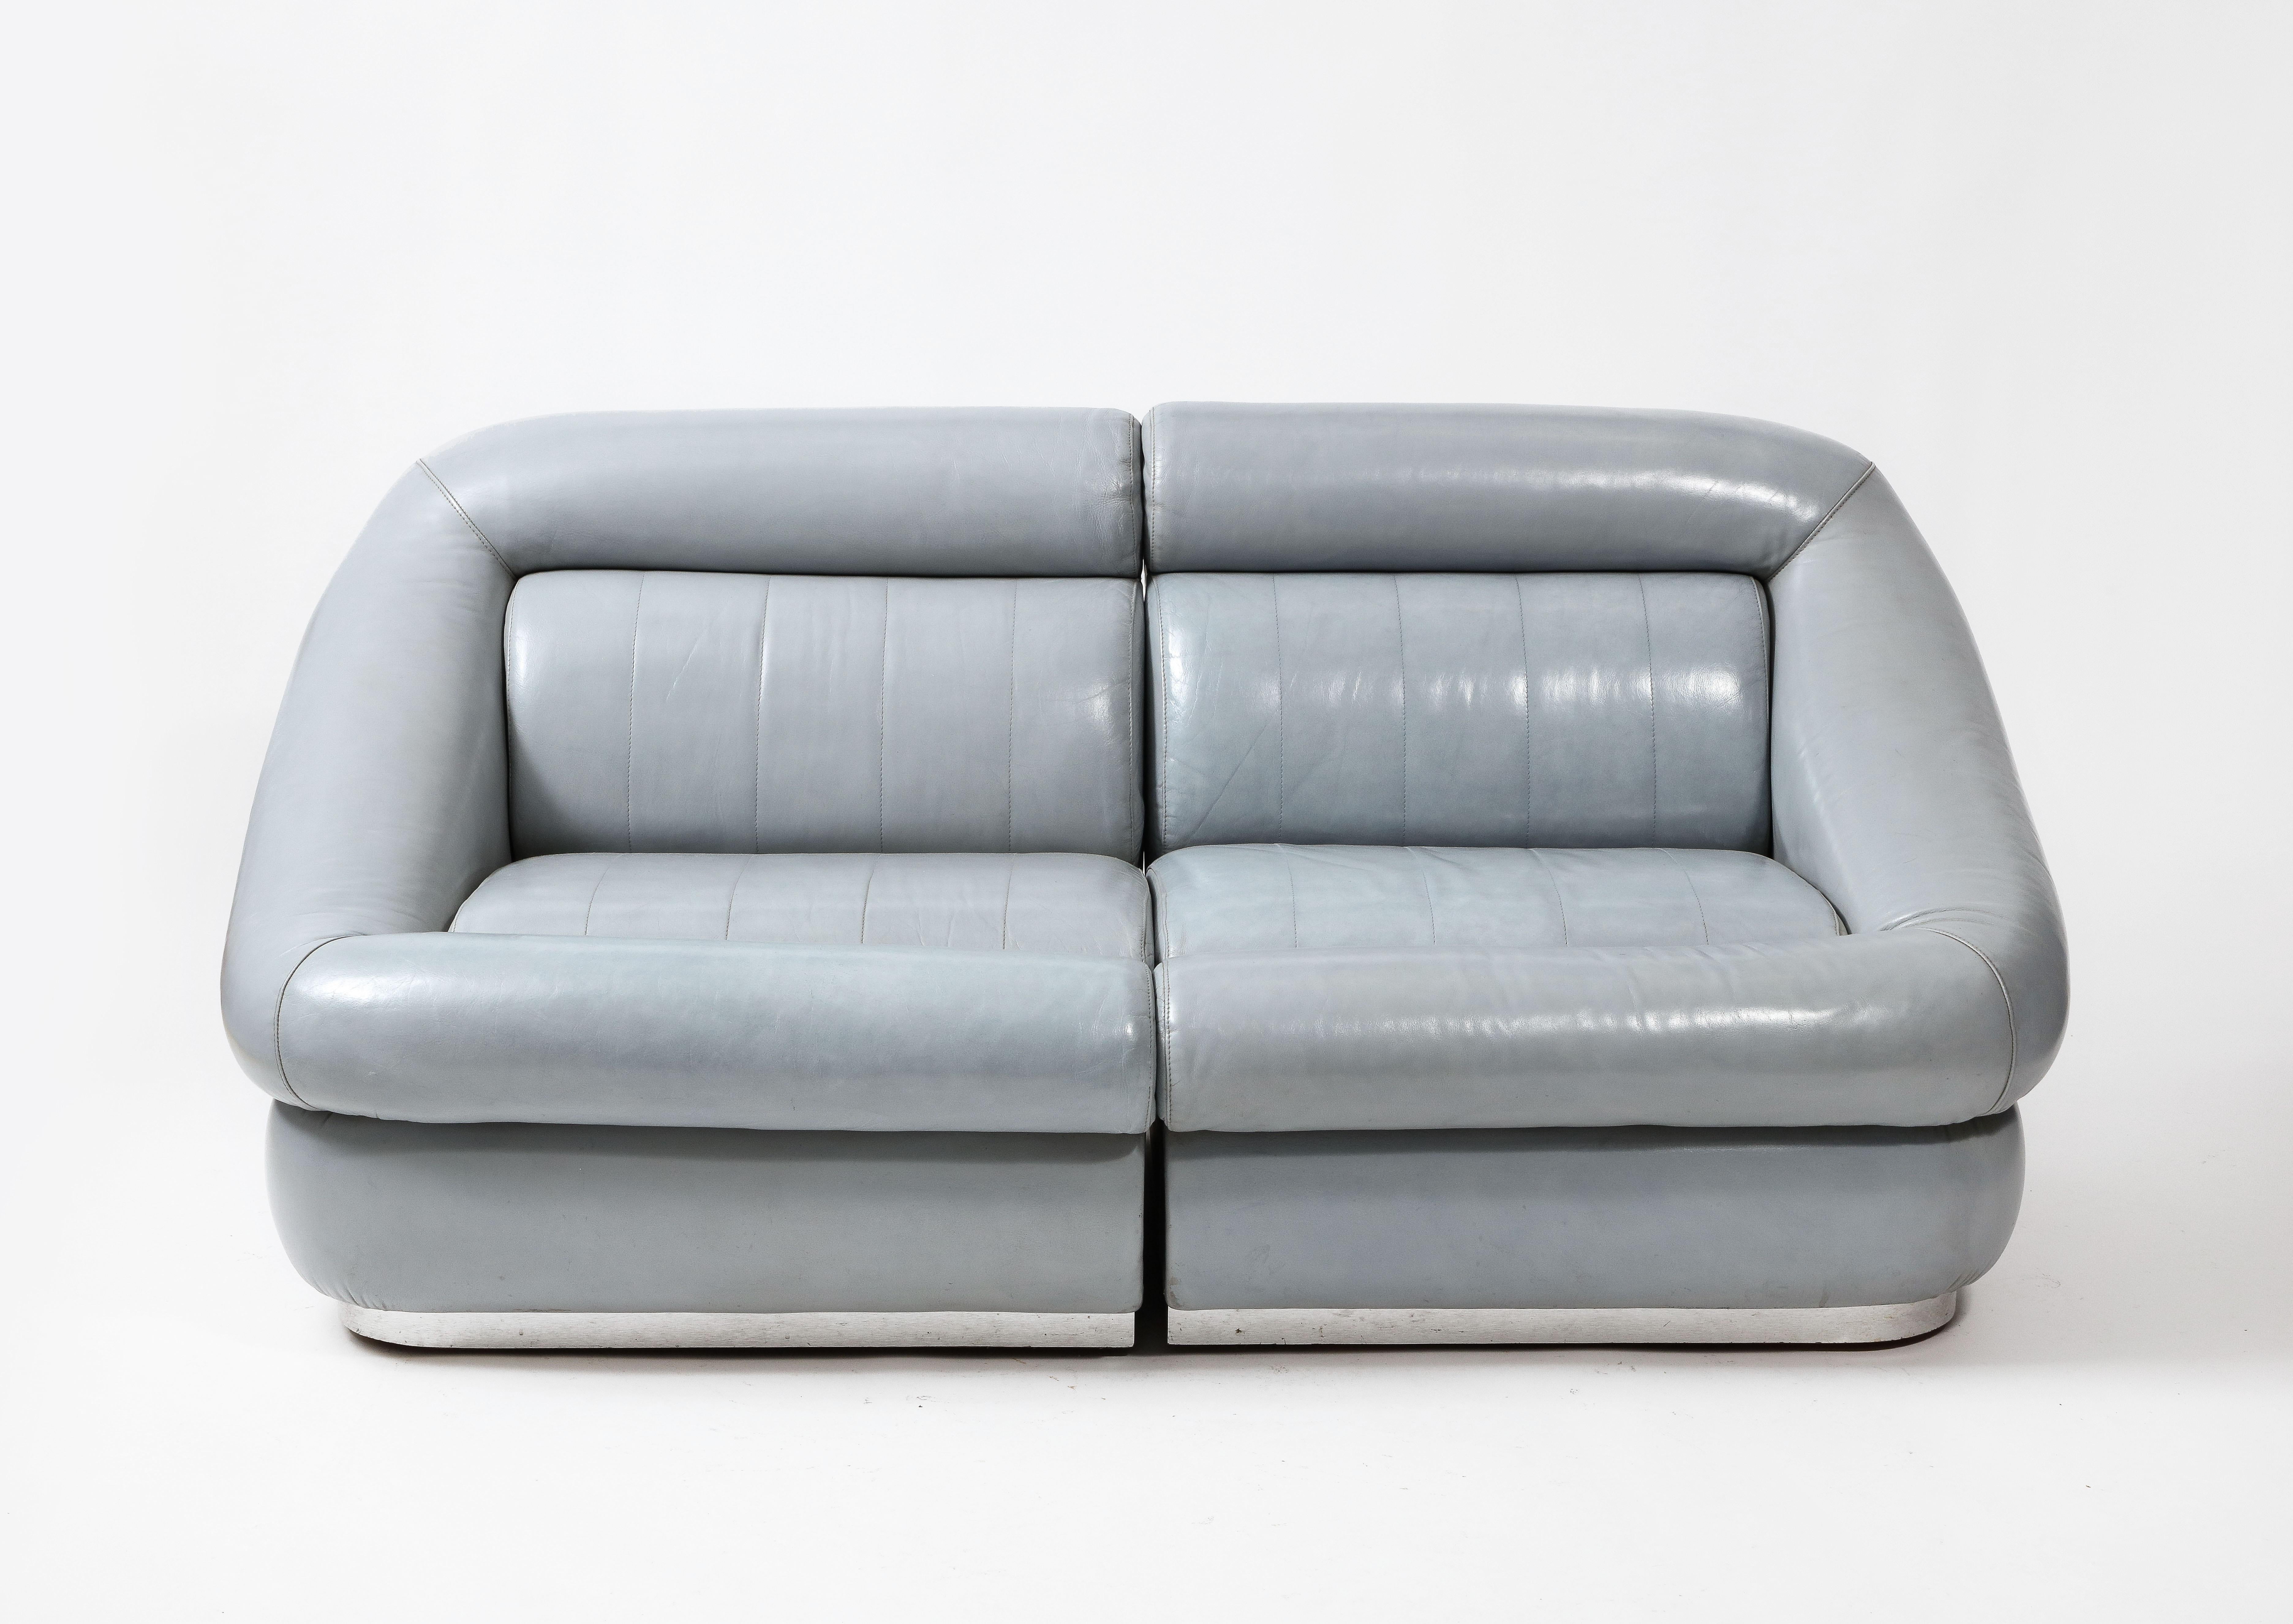 Elegant et confortable canapé deux pièces en cuir gris d'origine sur des piétements revêtus d'aluminium. 

Le cuir a été remis à neuf par des professionnels.

Deux canapés assortis sont disponibles. Ils sont vendus à l'unité.